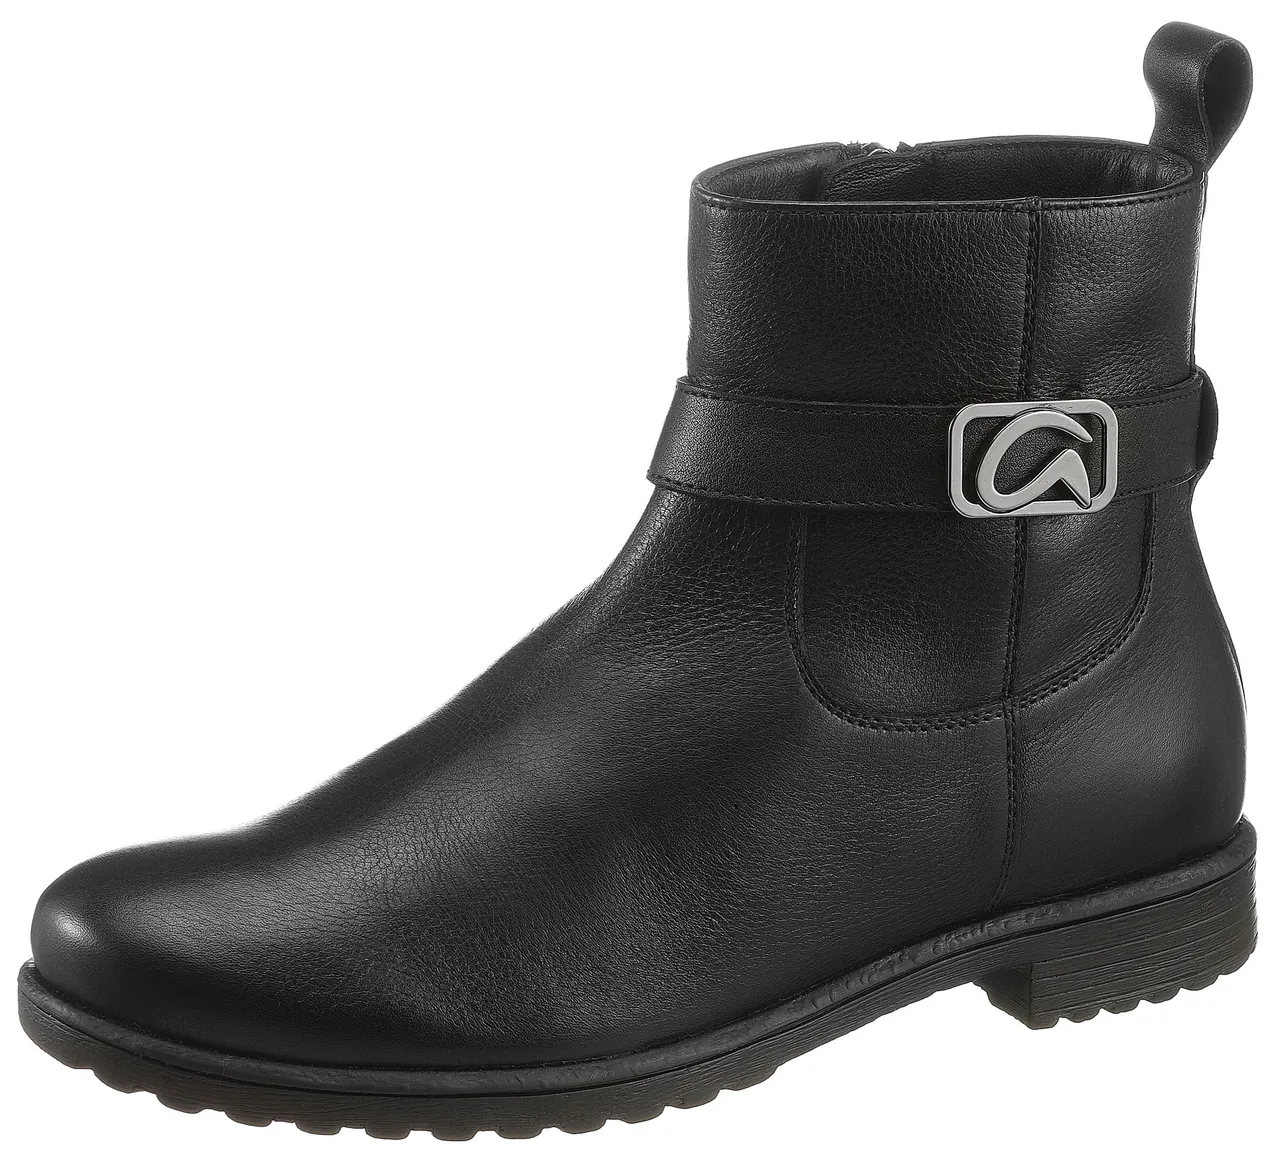 Stiefelette ARA "LIVERPOOL" Gr. 5 (38), schwarz Damen Schuhe Reißverschlussstiefeletten mit Zierriemchen Logo